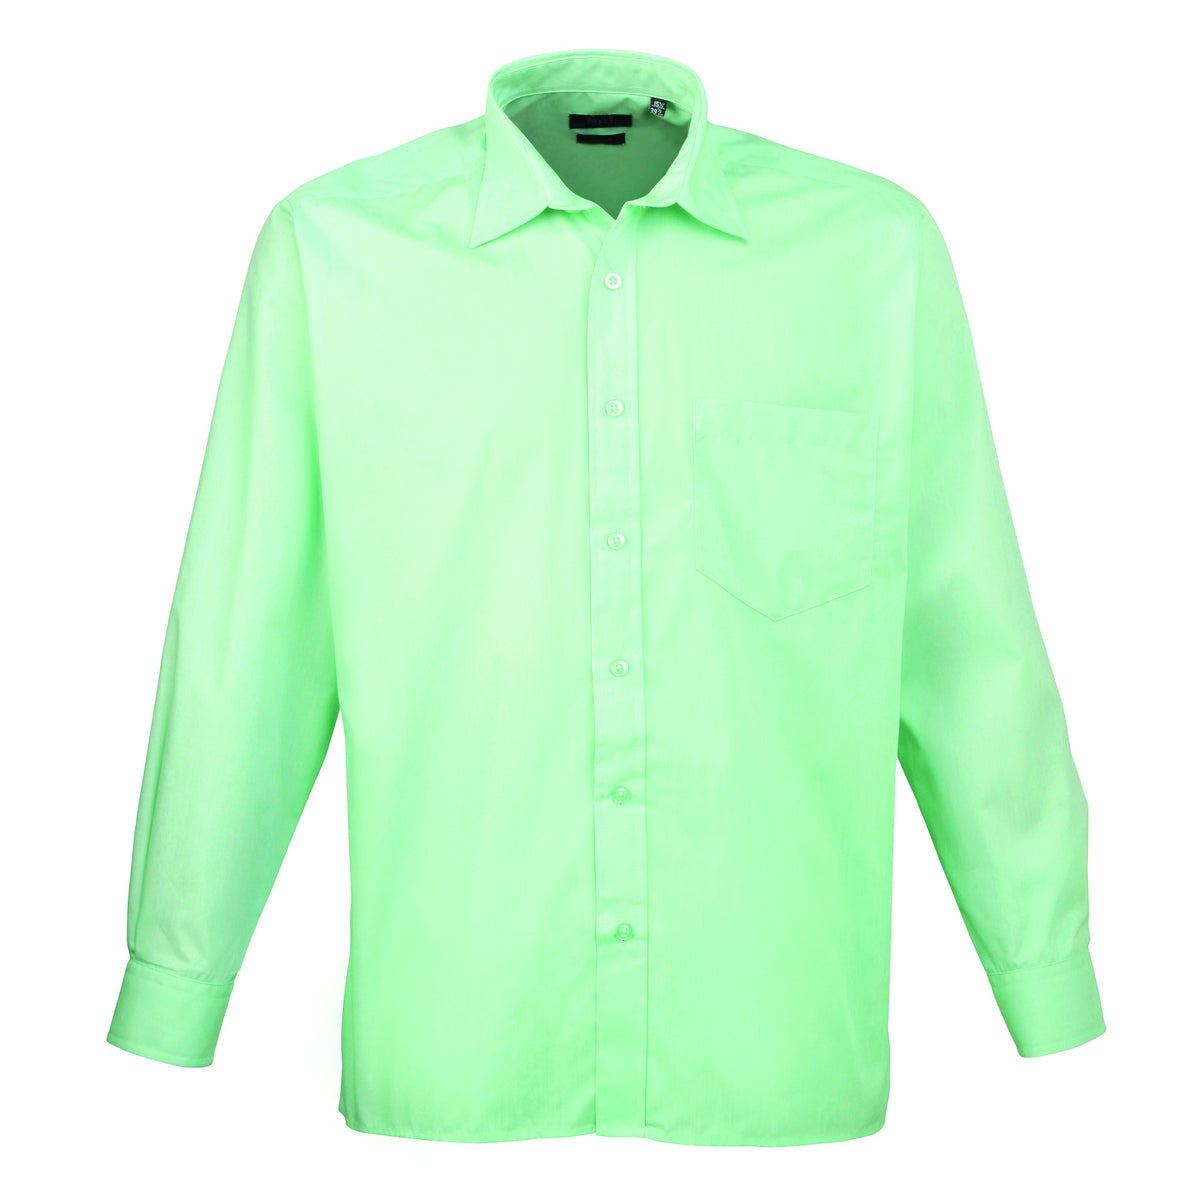 Premier Poplin Shirts (Emerald, Aqua, Natural, Khaki, Mocha) - peterdrew.com
 - 8